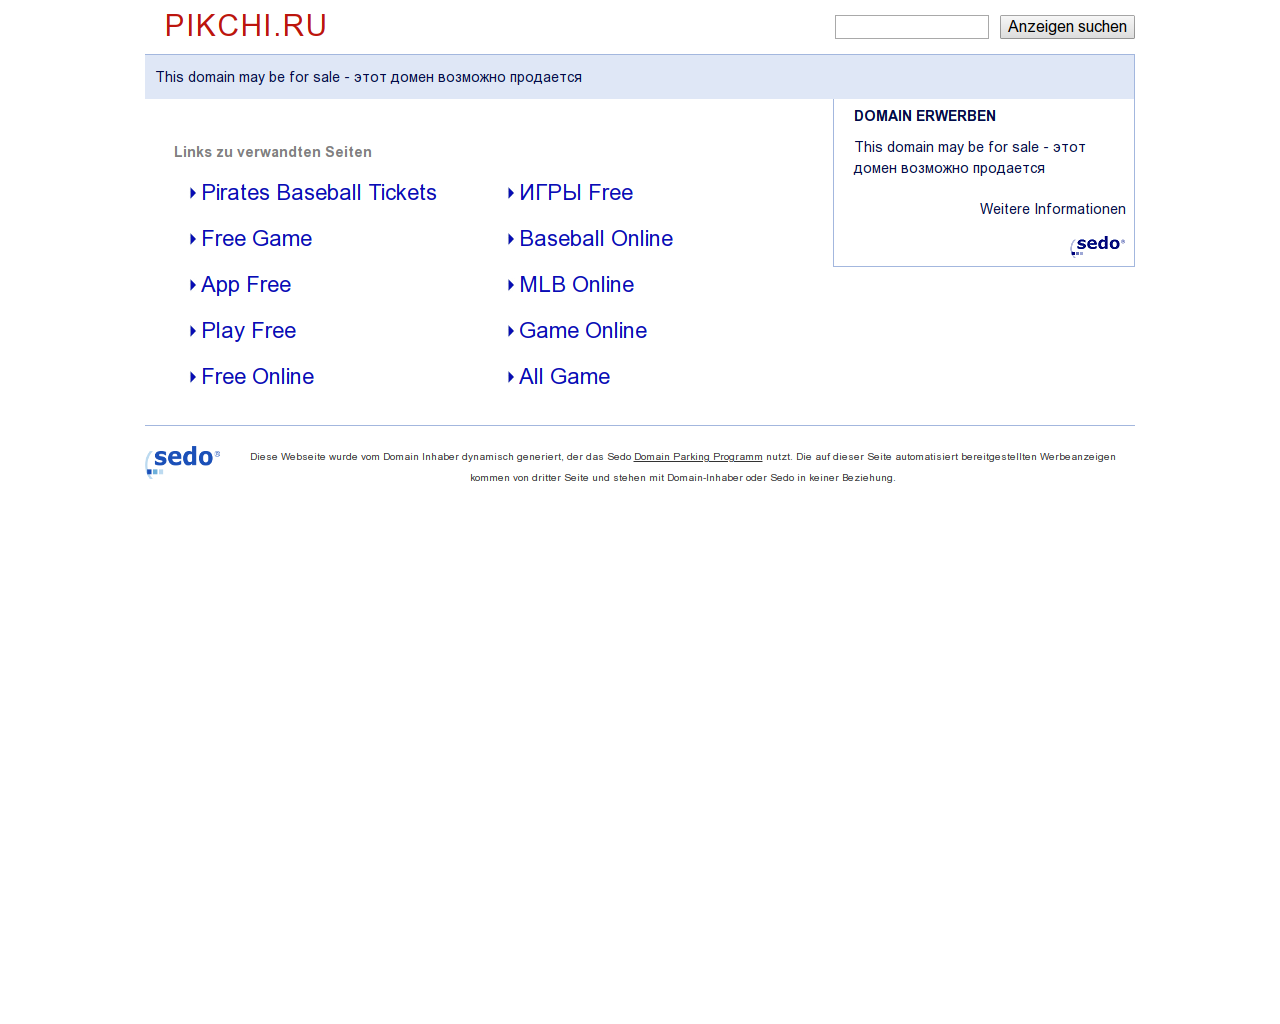 Изображение сайта pikchi.ru в разрешении 1280x1024